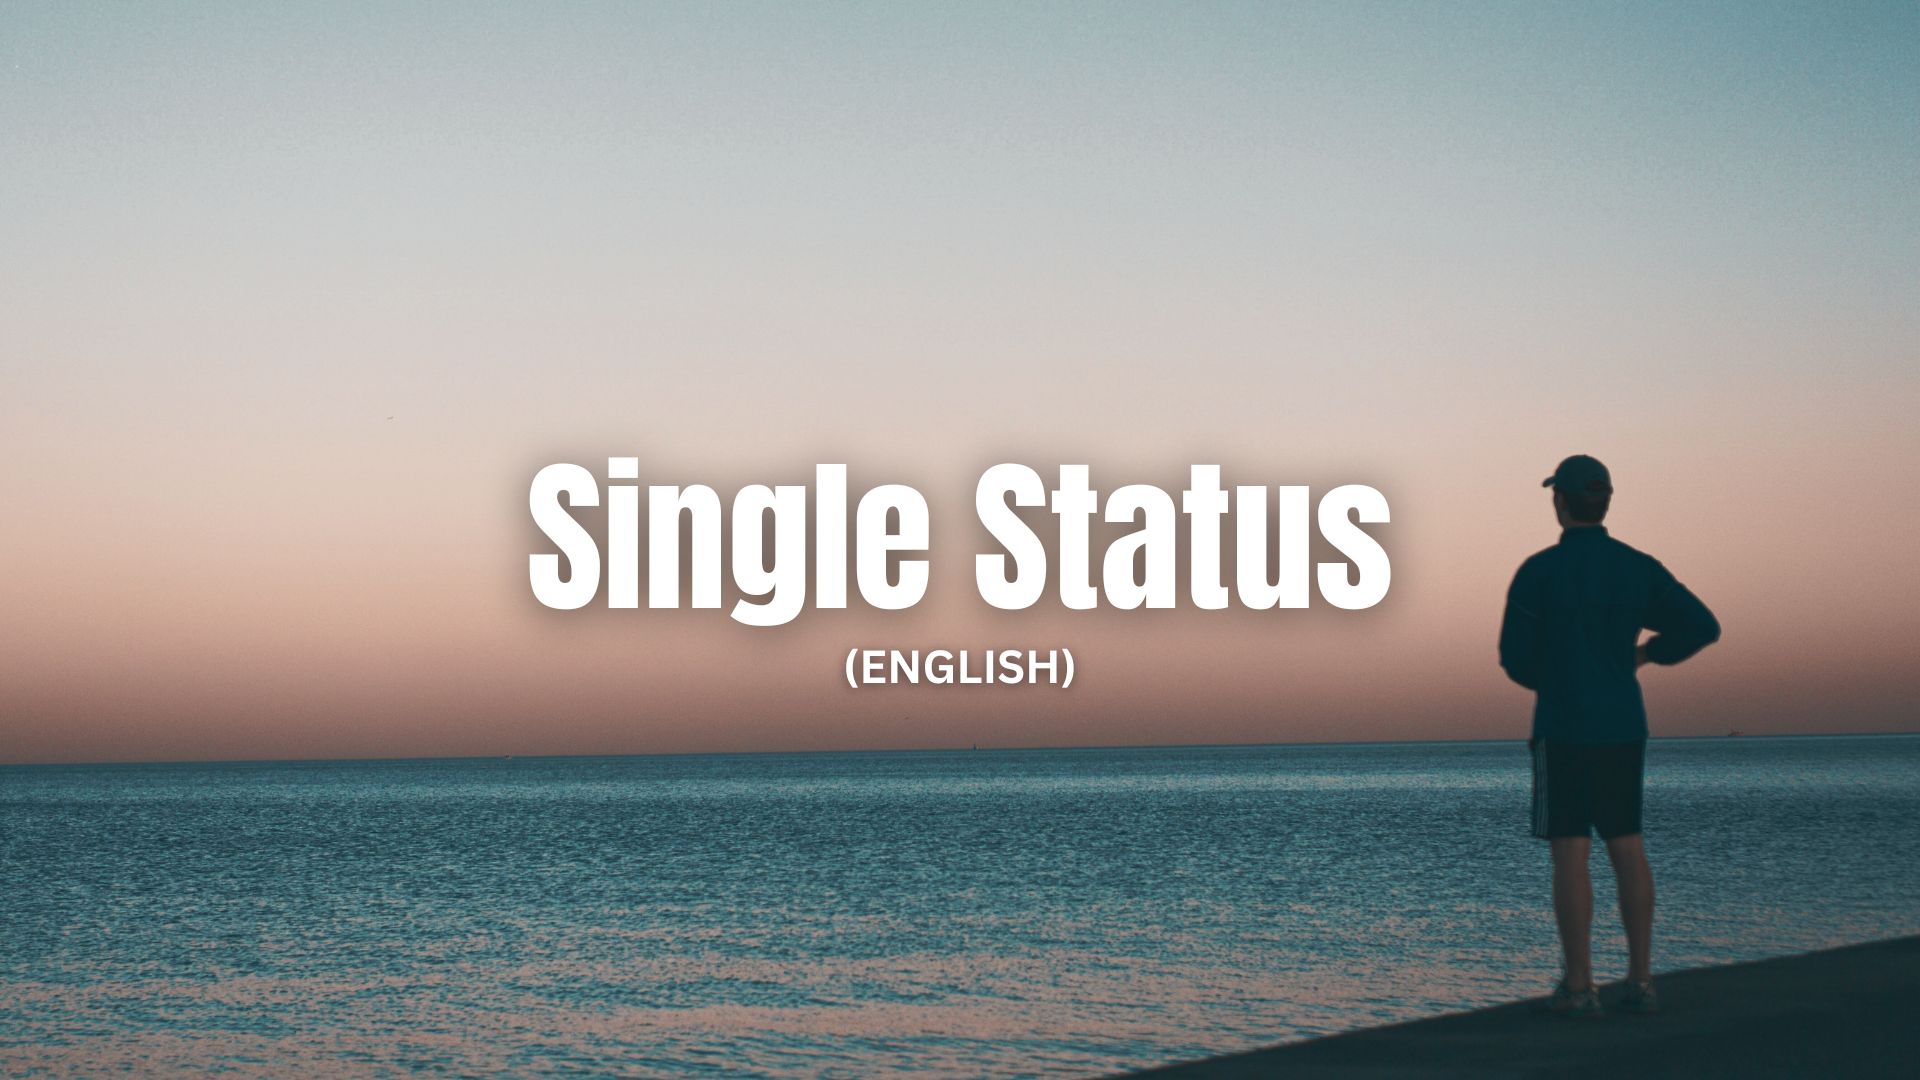 Single Status in English